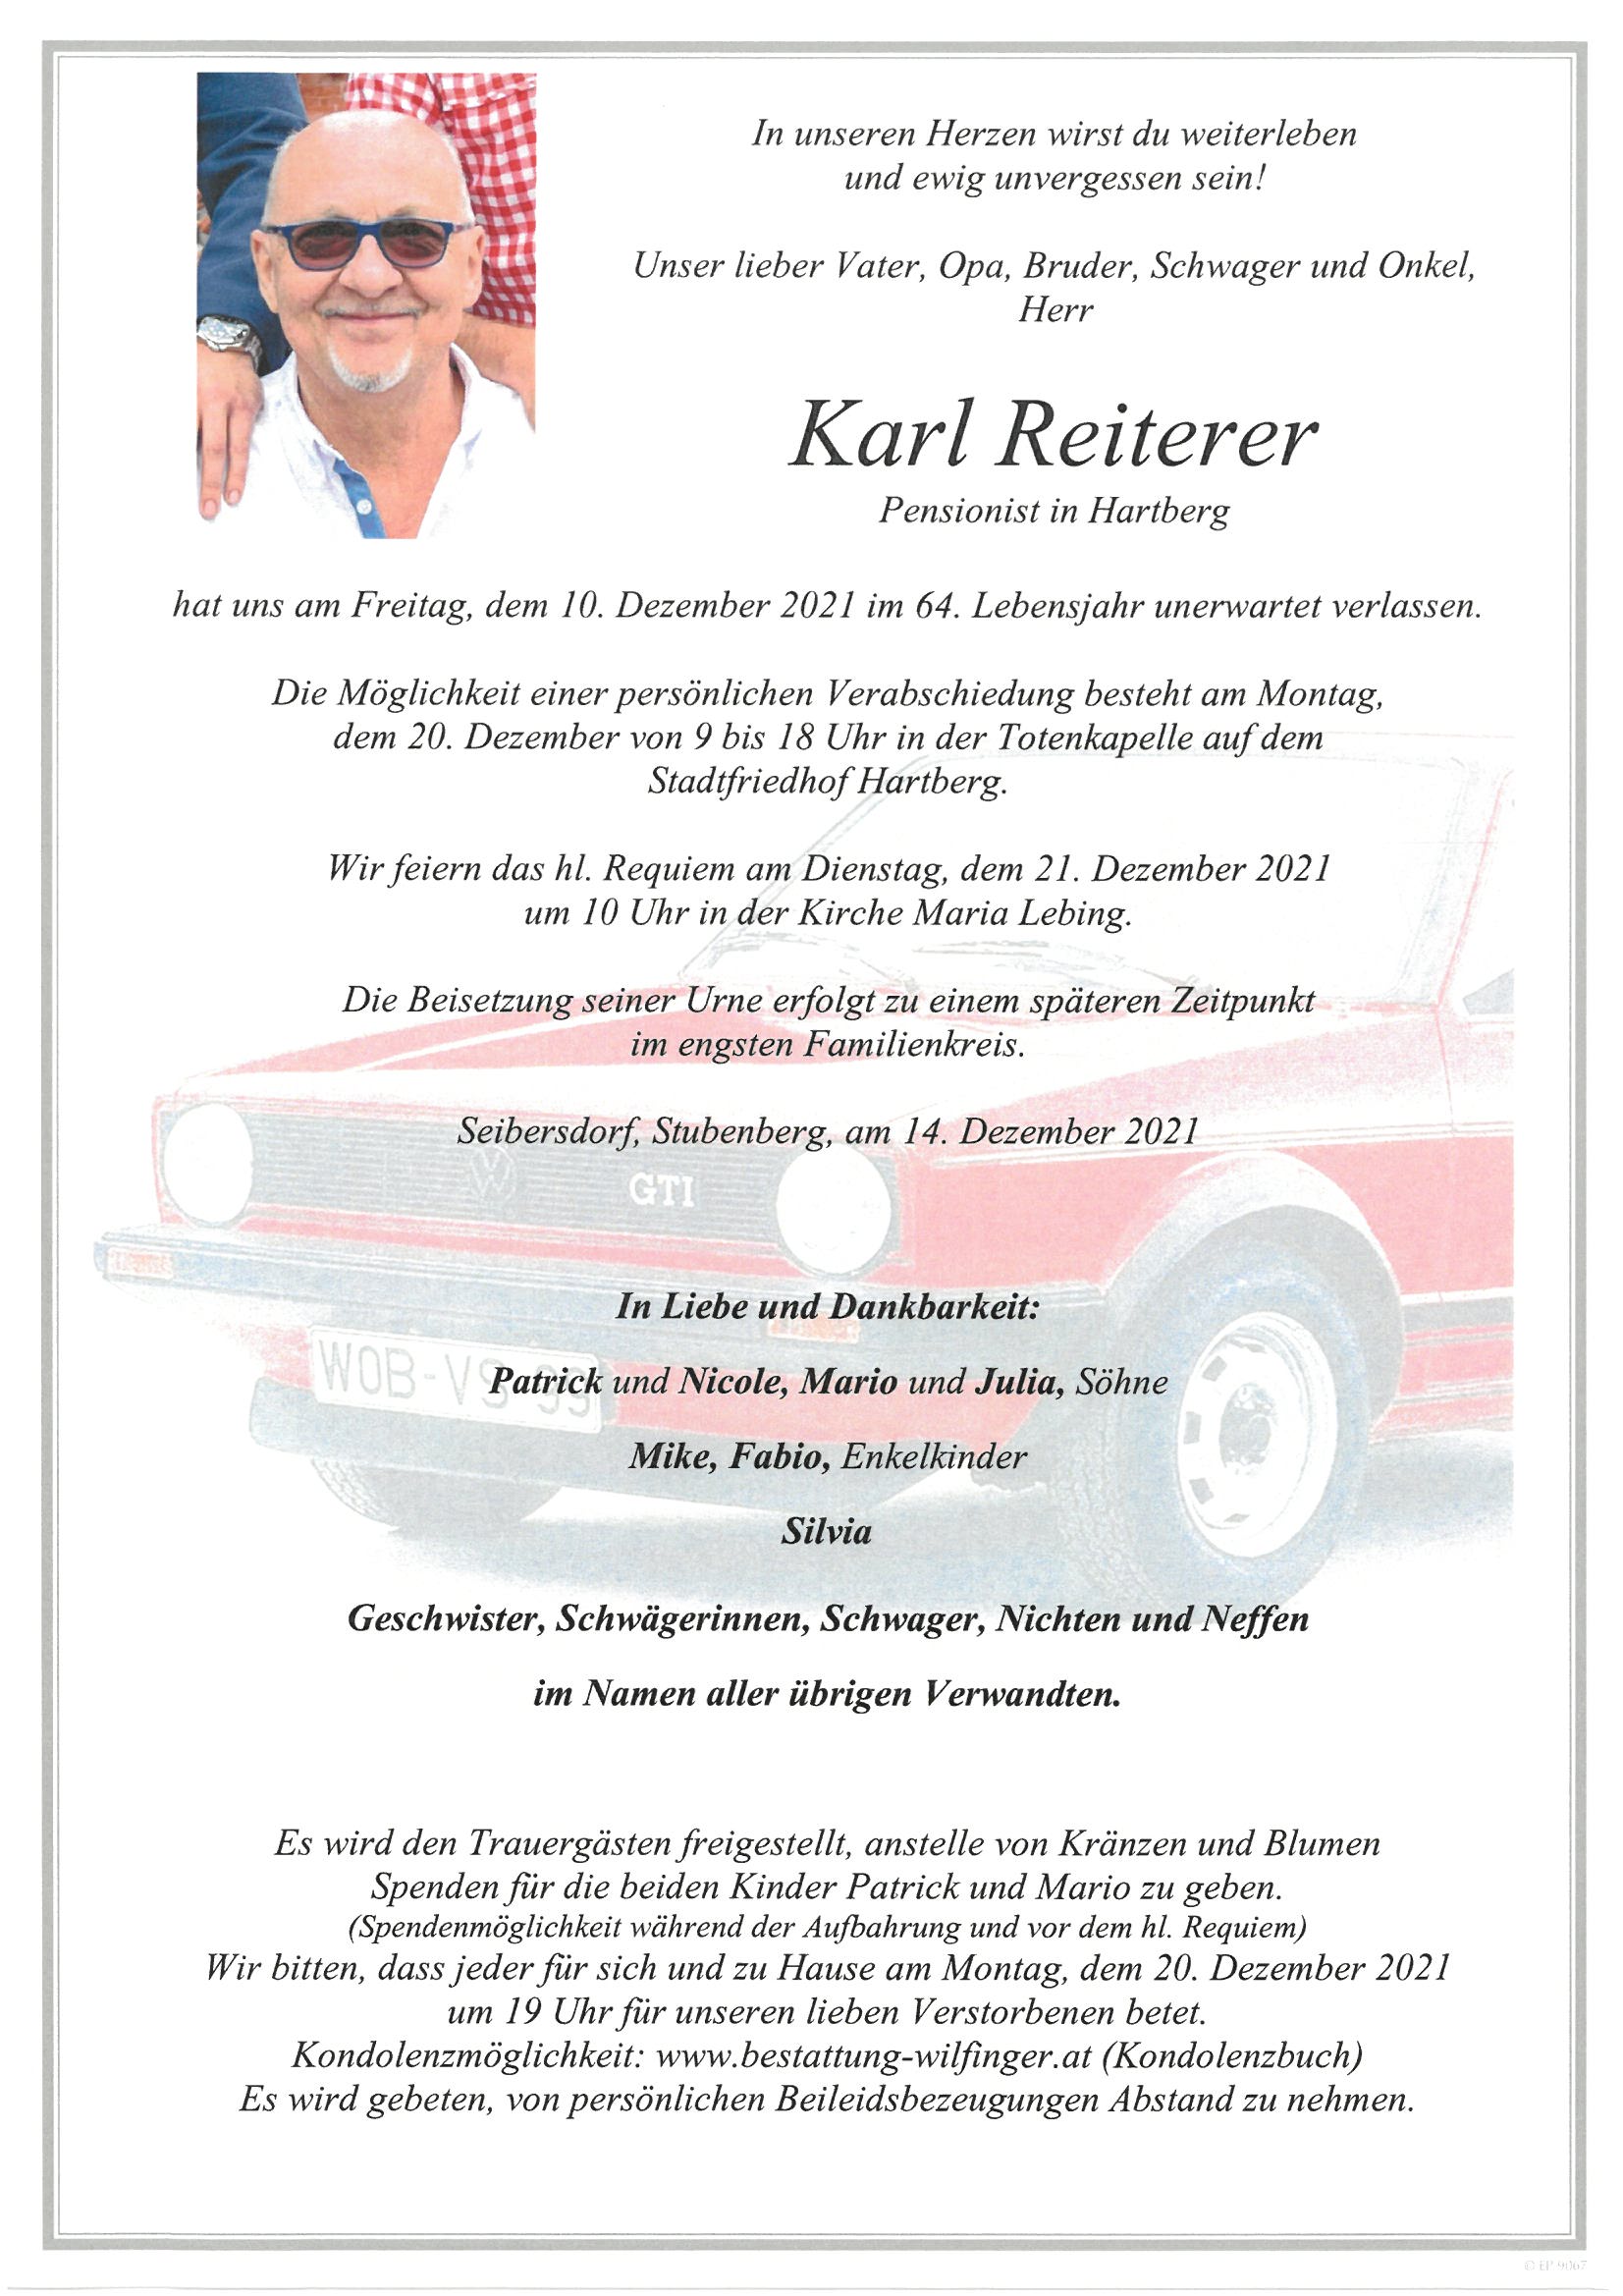 Karl Reiterer